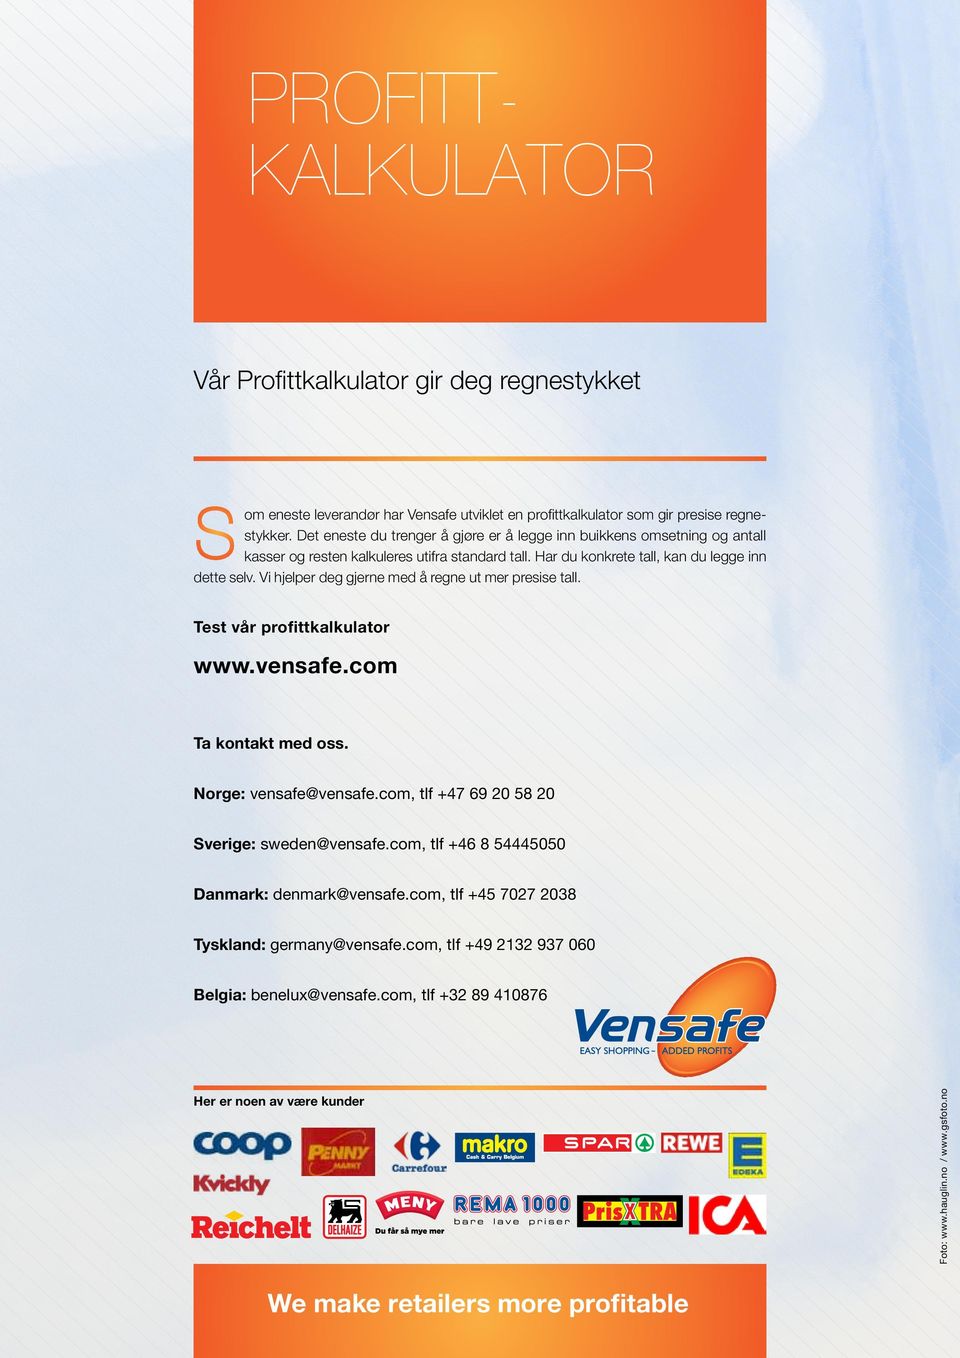 Vi hjelper deg gjerne med å regne ut mer presise tall. Test vår profittkalkulator www.vensafe.com Ta kontakt med oss. Norge: vensafe@vensafe.com, tlf +47 69 20 58 20 Sverige: sweden@vensafe.